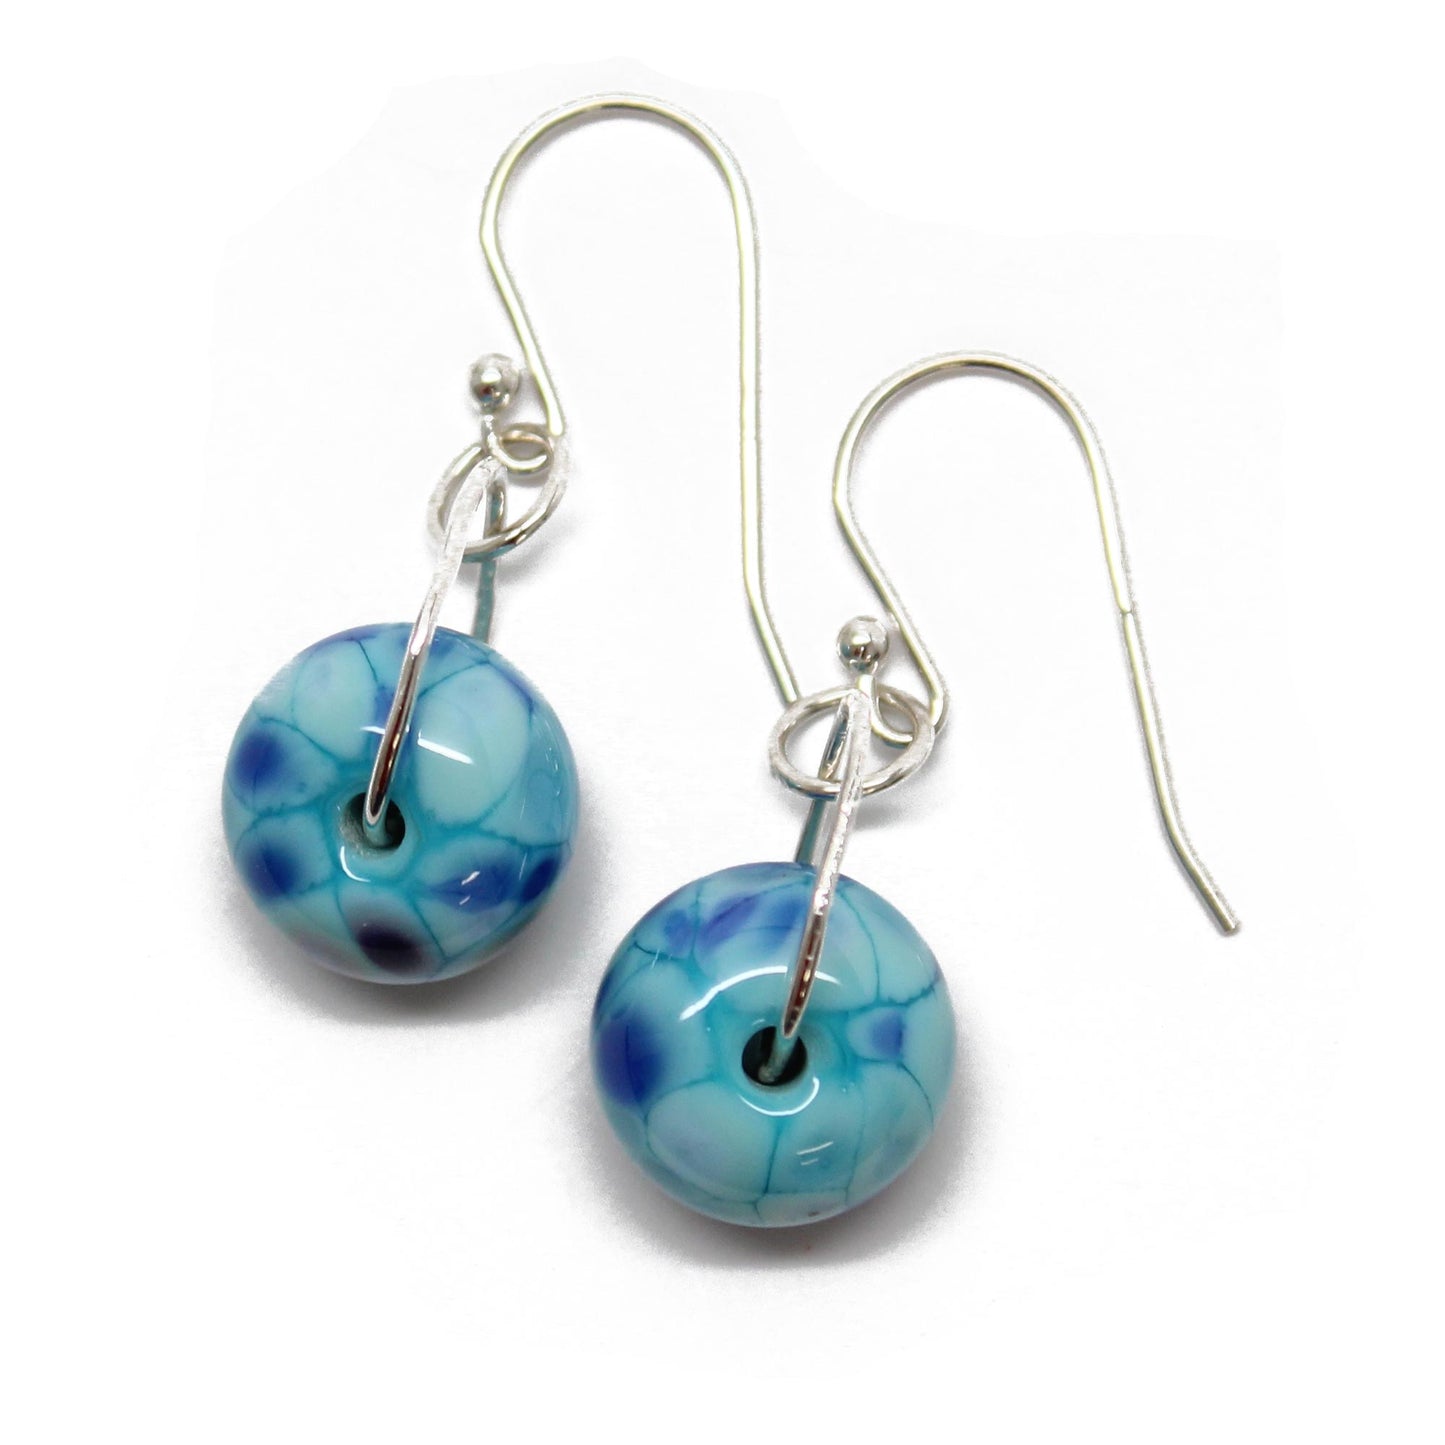 Little Blue Lampwork Glass Bead Earrings in Sterling Silver